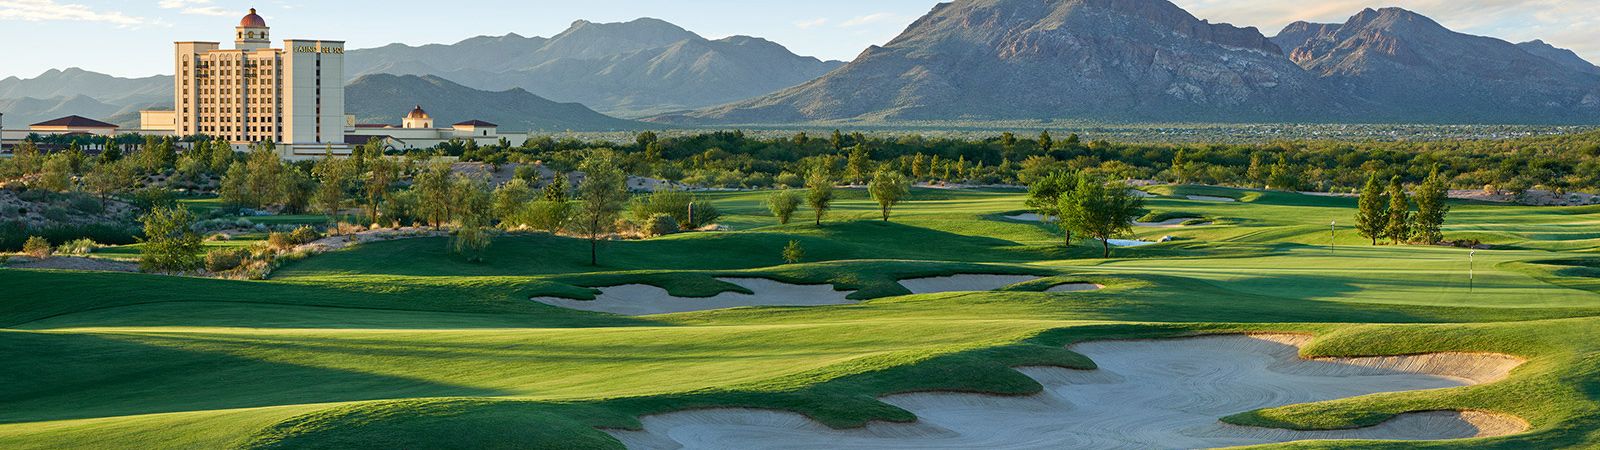 Tucson Golf Course Details